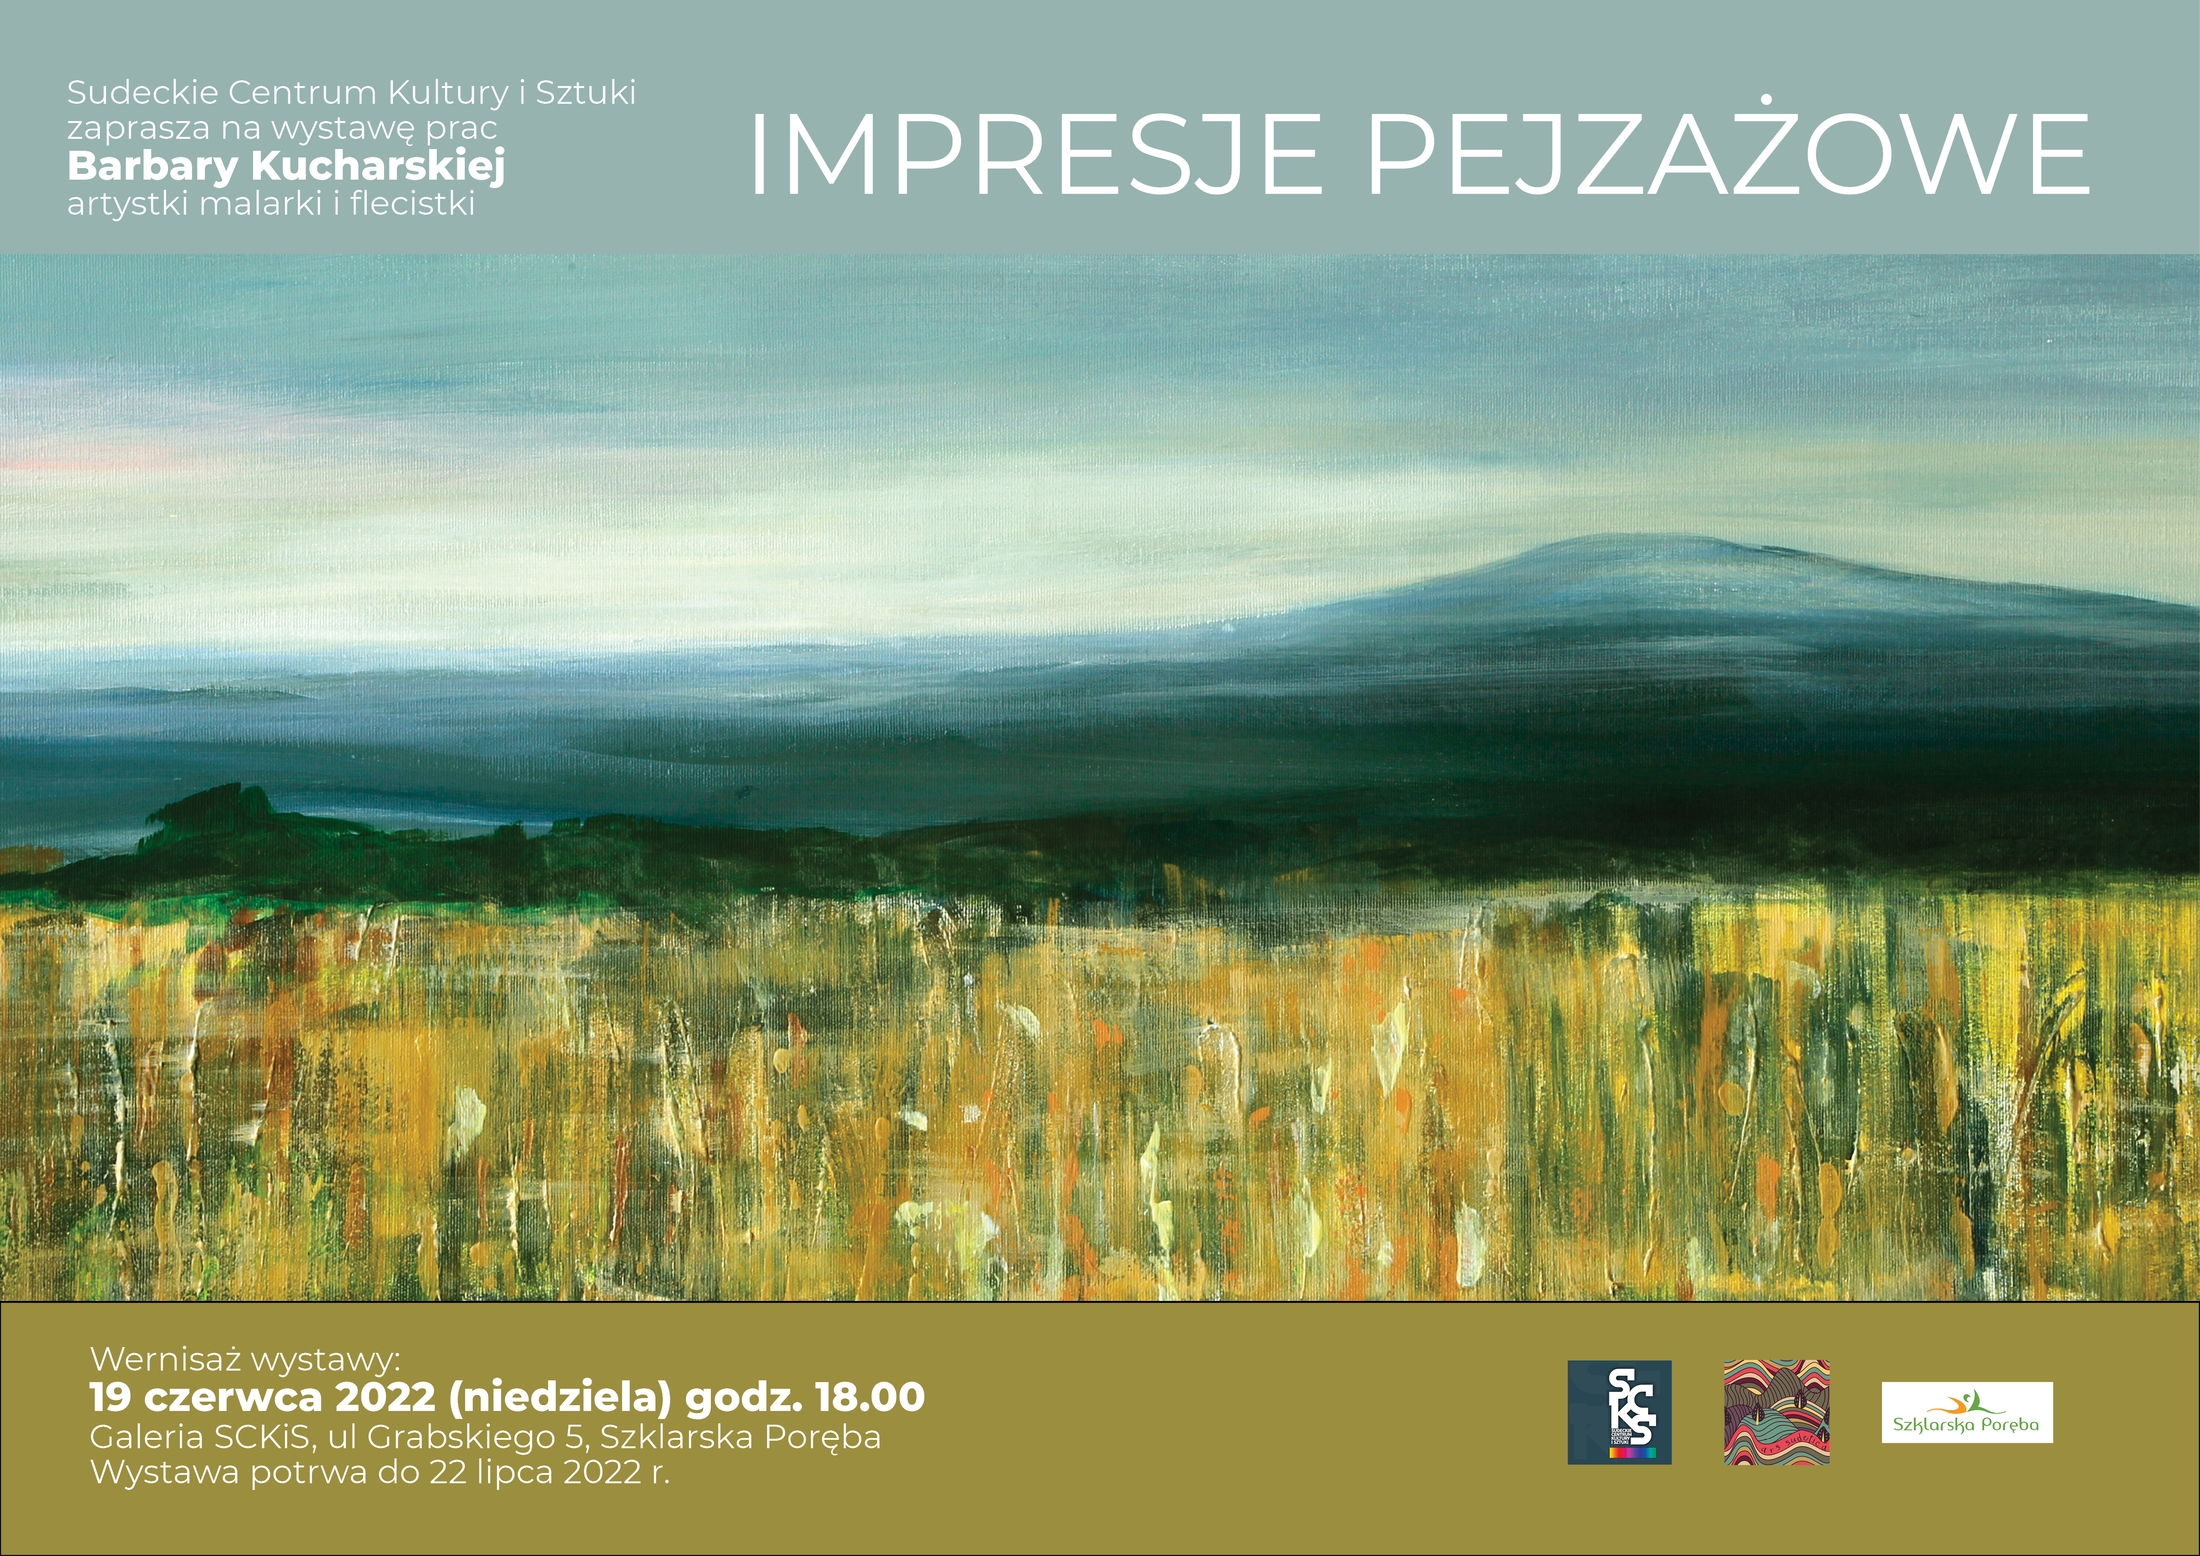 Impresje pejzażowe - wernisaż wystawy 19 czerwca 2022 w Sudeckim Centrum Kultury i Sztuki